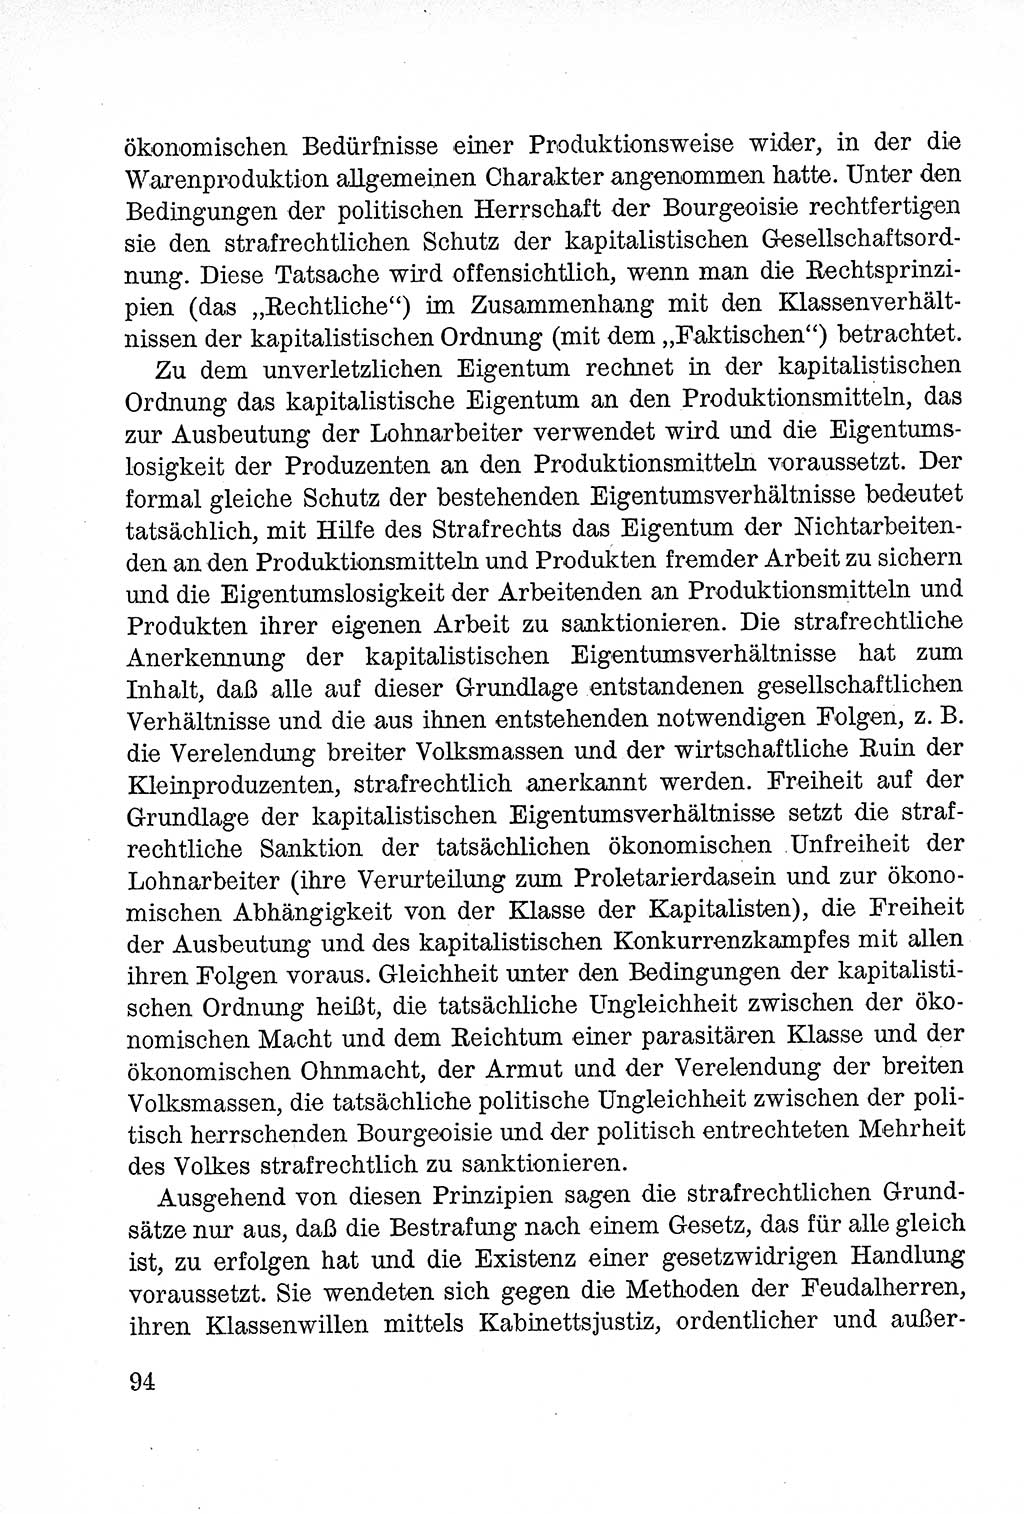 Lehrbuch des Strafrechts der Deutschen Demokratischen Republik (DDR), Allgemeiner Teil 1957, Seite 94 (Lb. Strafr. DDR AT 1957, S. 94)